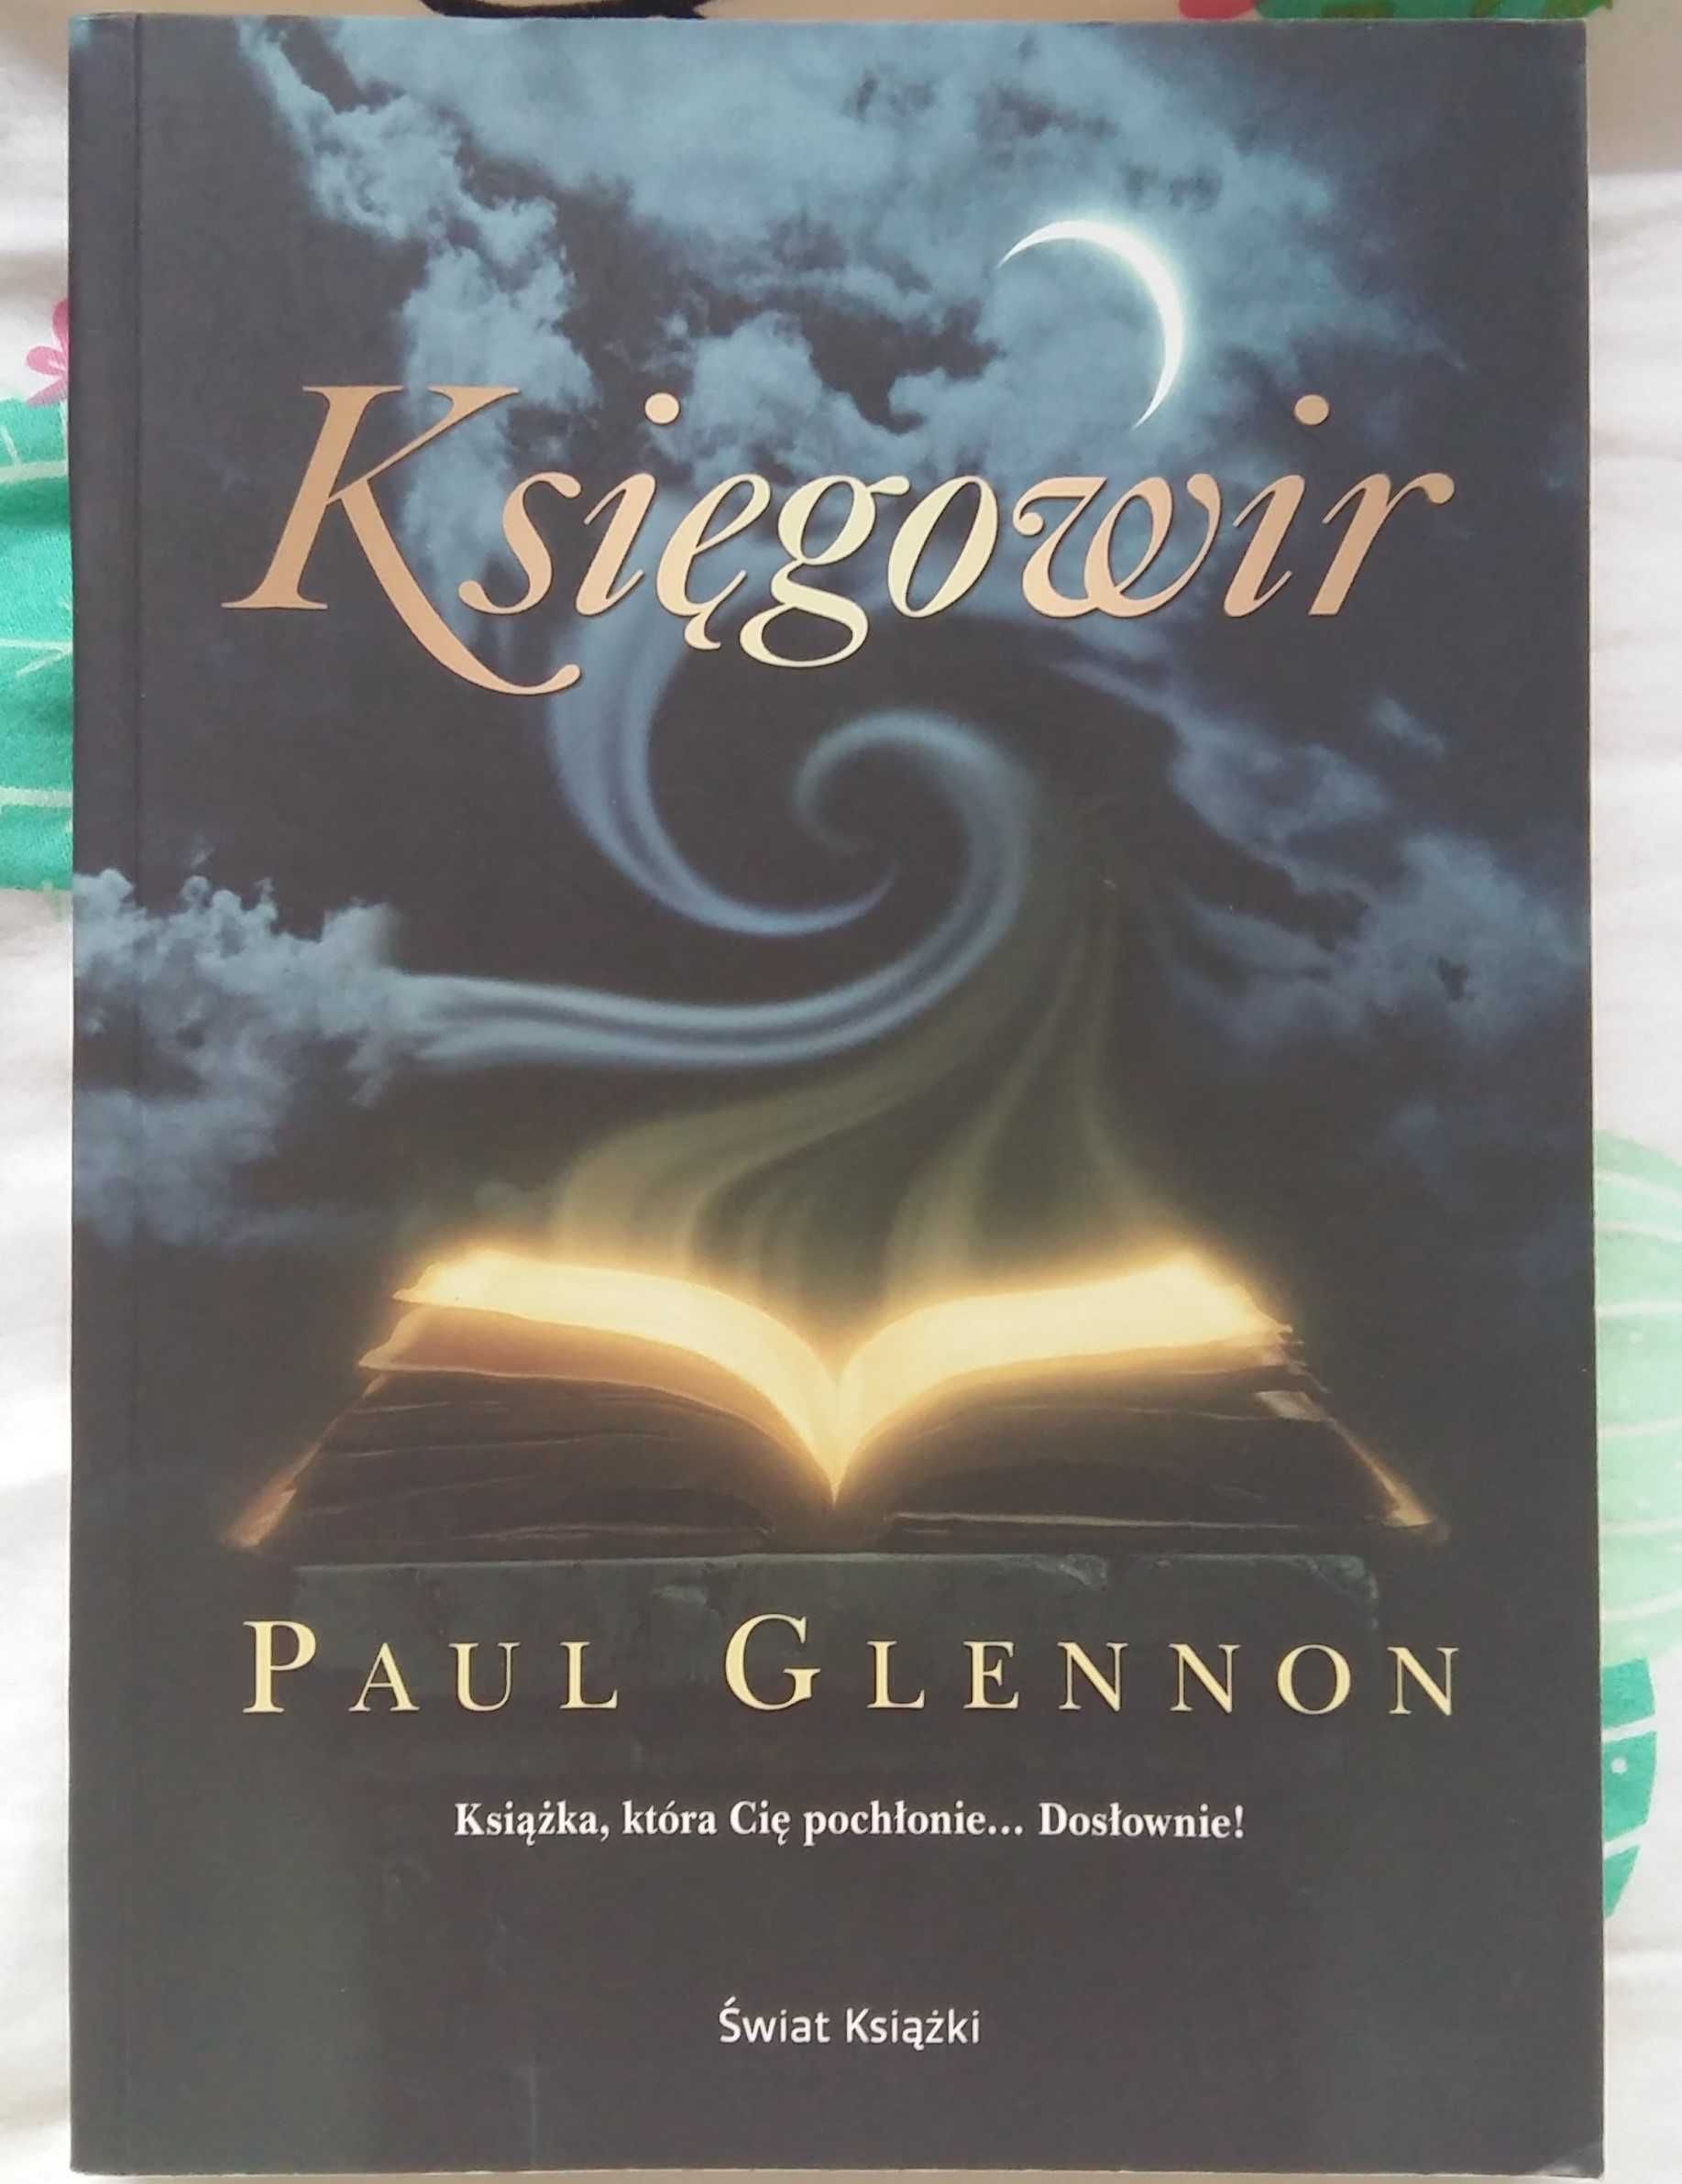 Paul Glennon - Księgowir